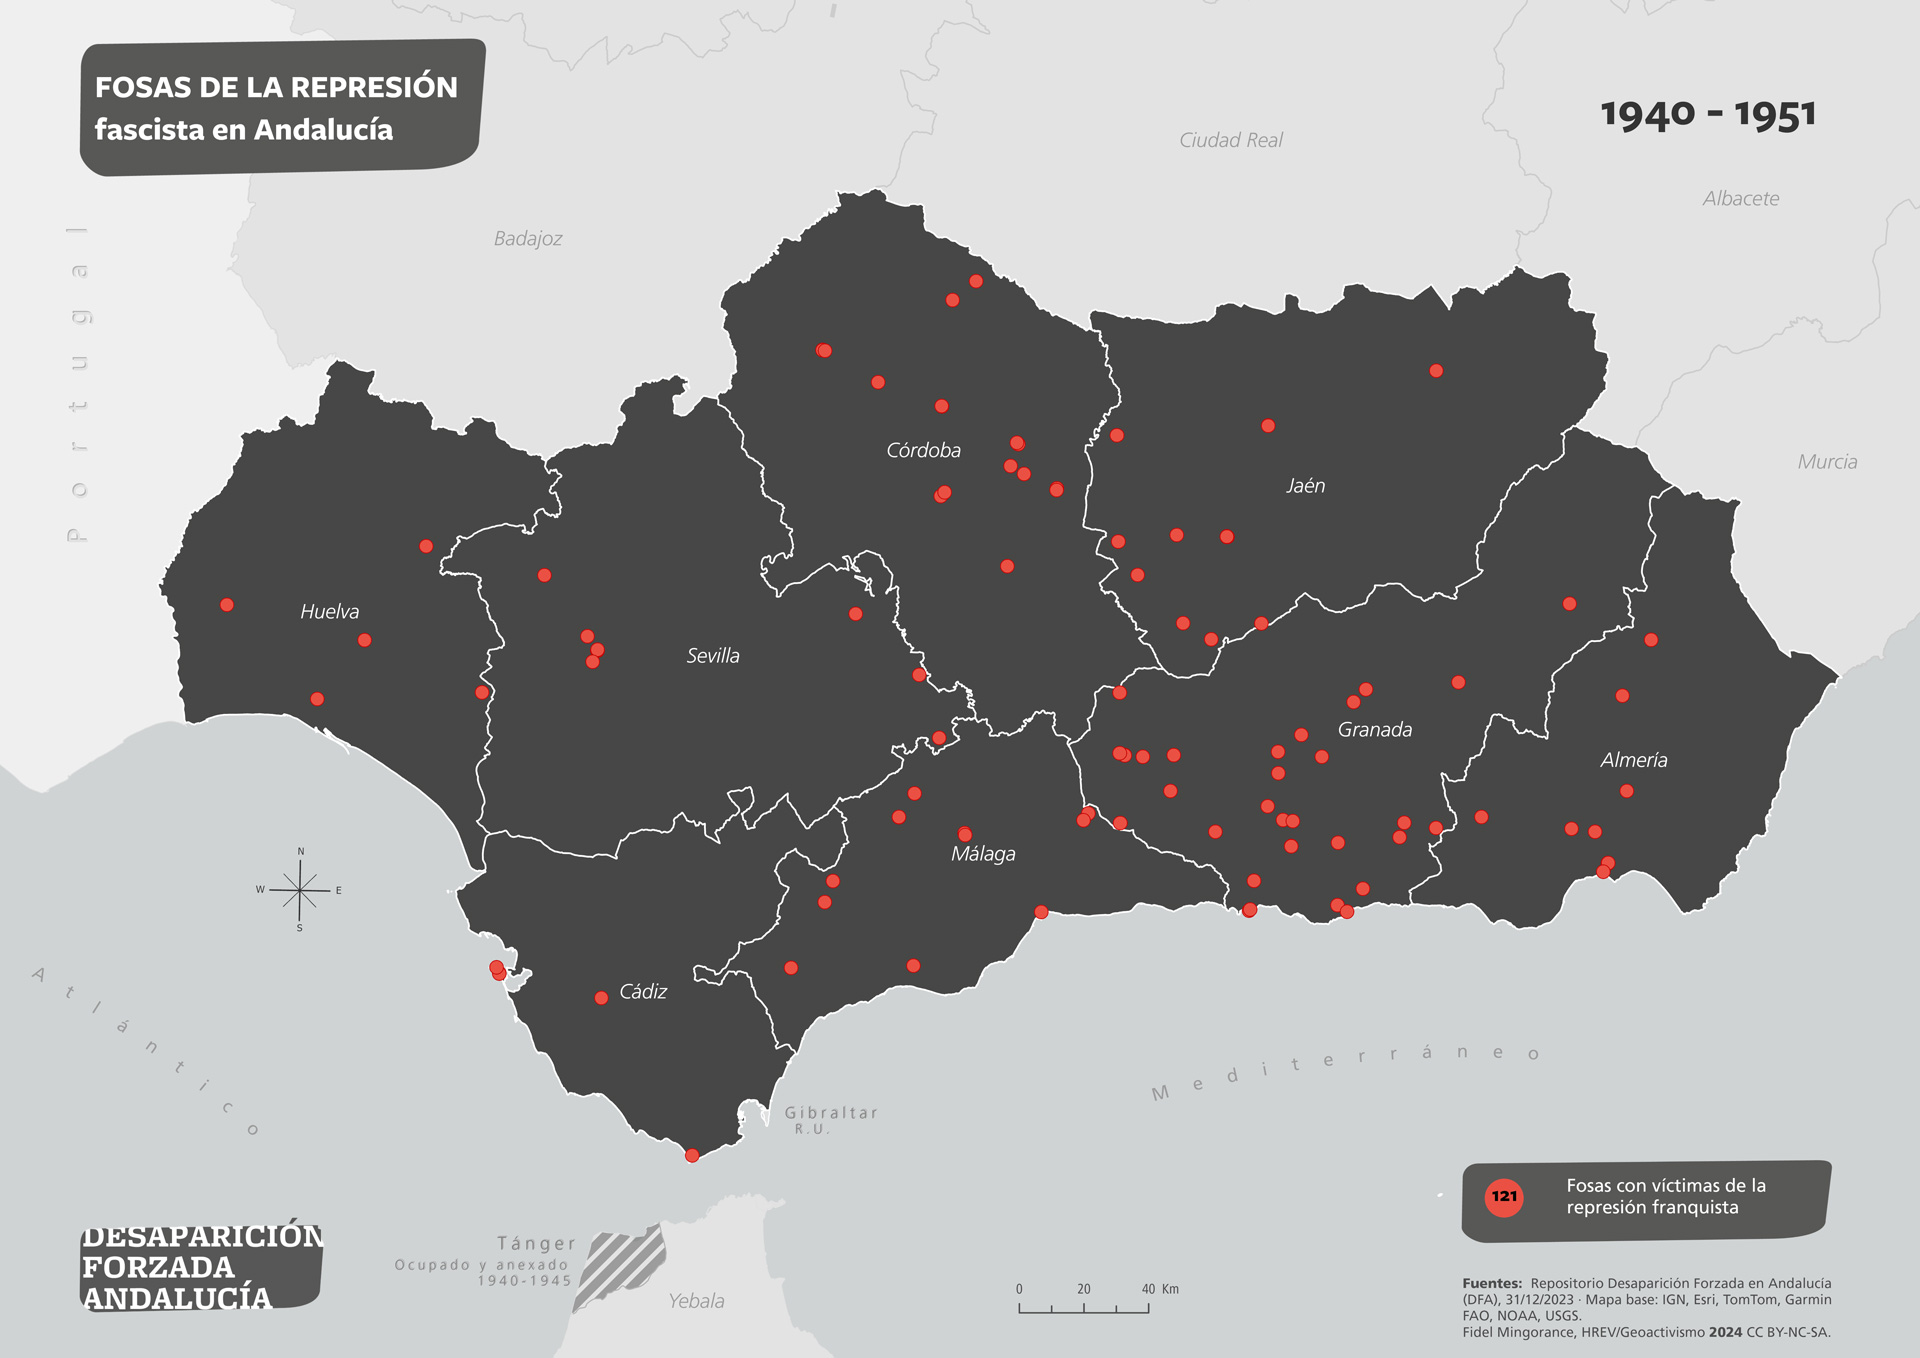 Fosas de la represión fascista en Andalucía 1940-1951